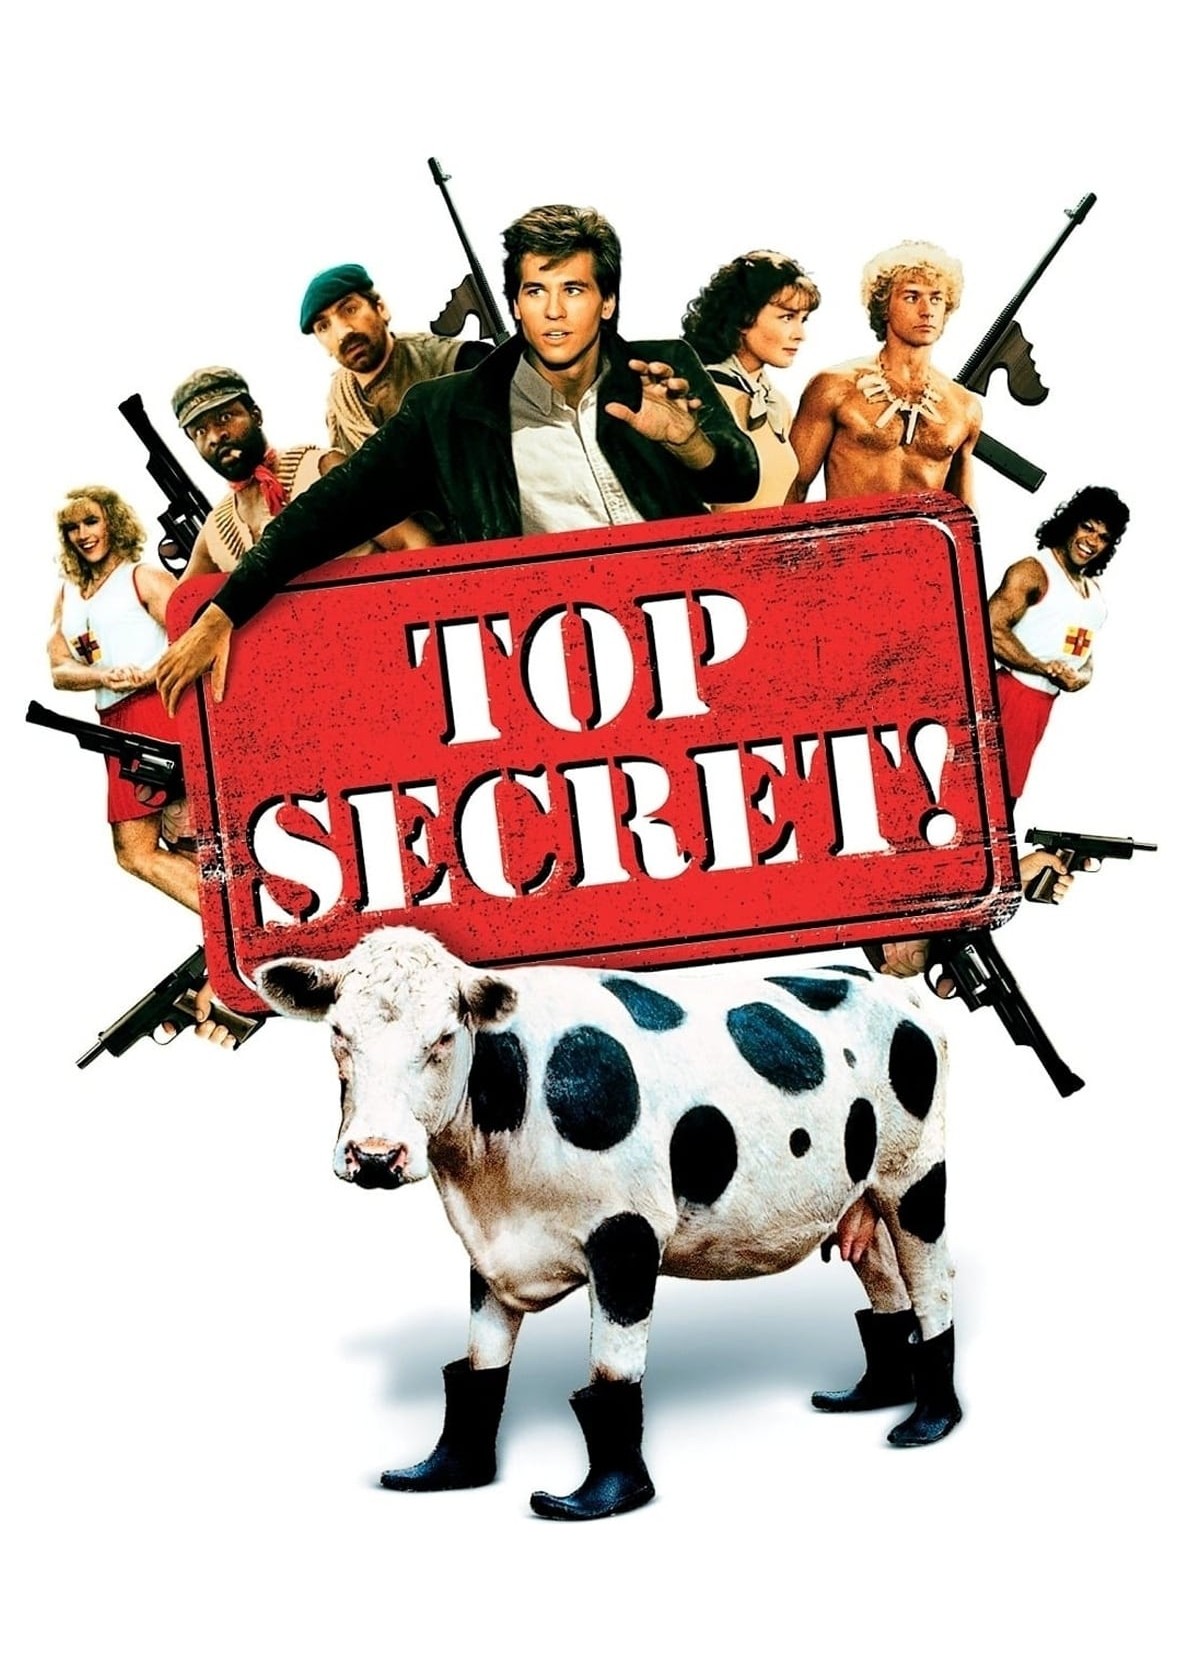 Top Secret! 1984